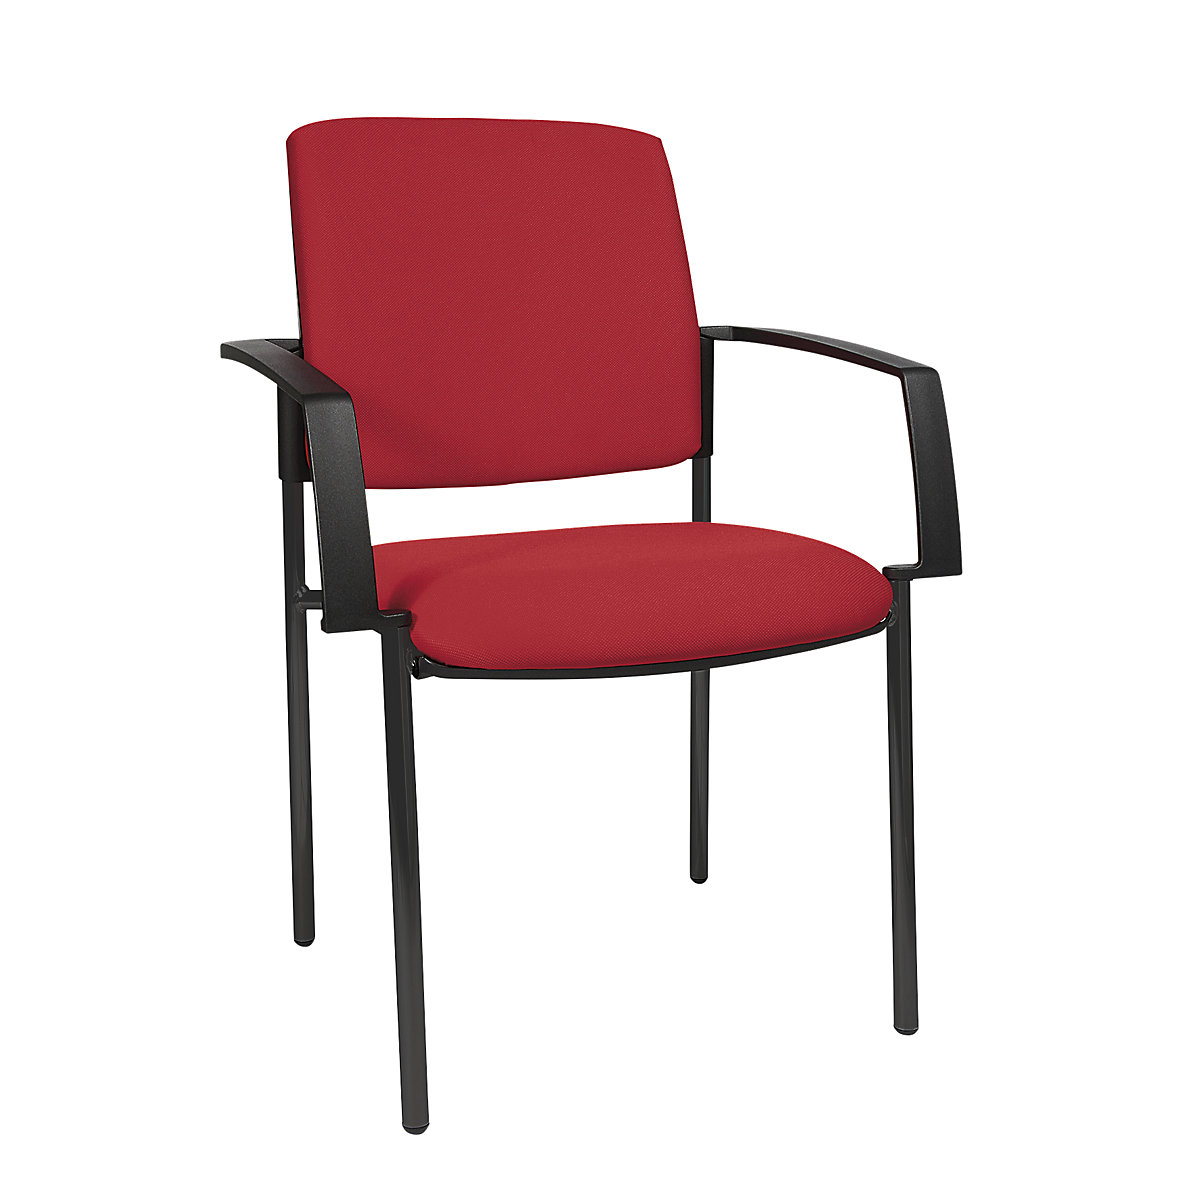 Cadeira almofadada de empilhar – Topstar, armação de quatro pés, embalagem de 2 unid., armação preta, forro vermelho-4